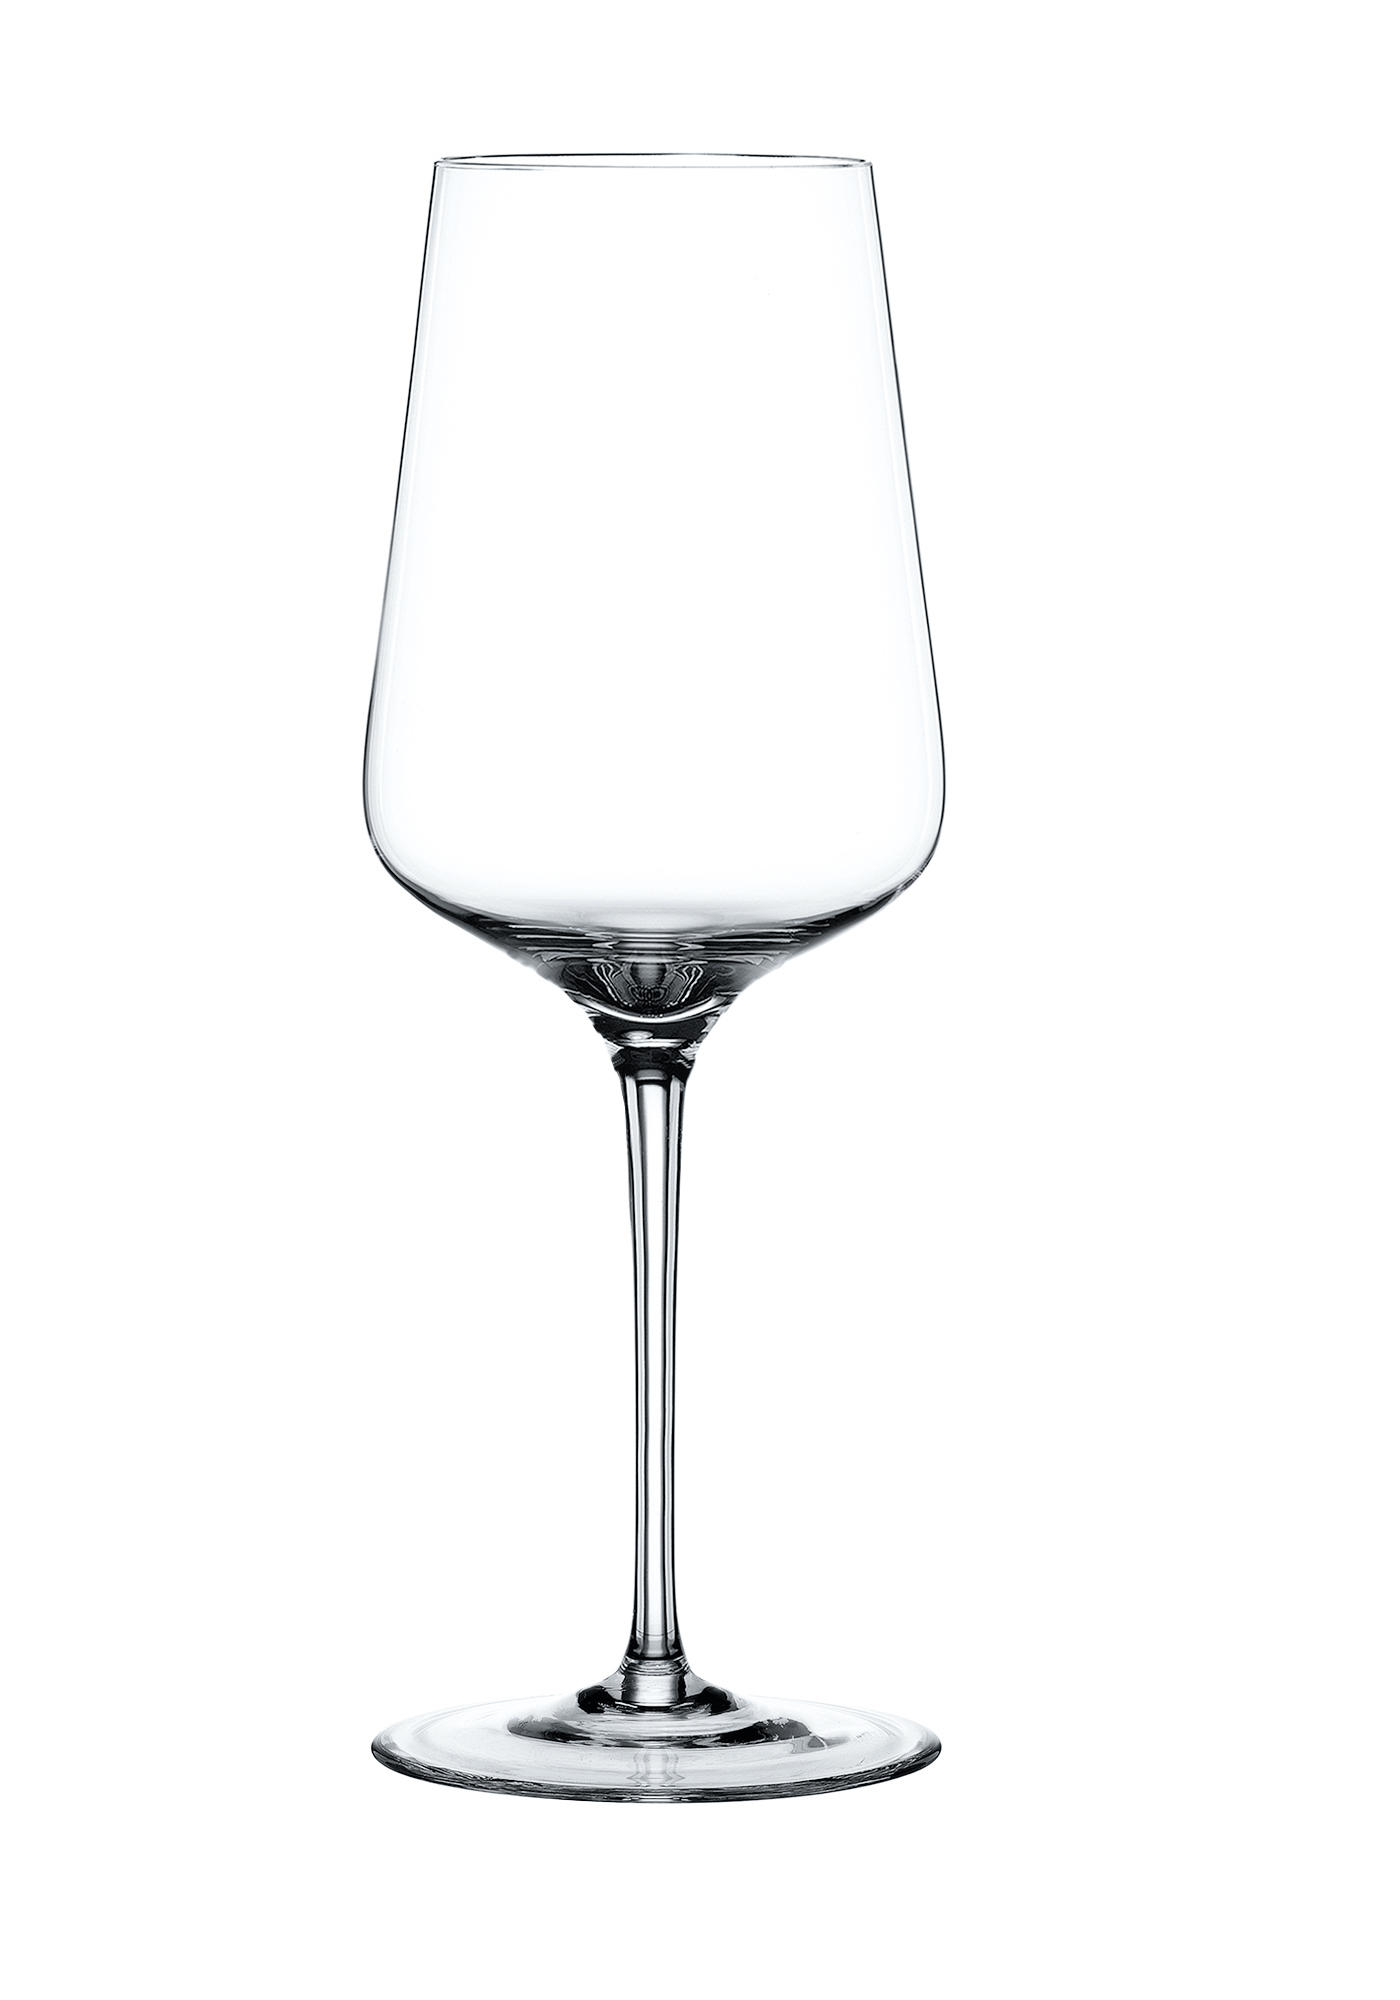 GLÄSERSET Vinova  4-teilig  - Transparent, Design, Glas (18,4/18,4/24,9cm) - Nachtmann